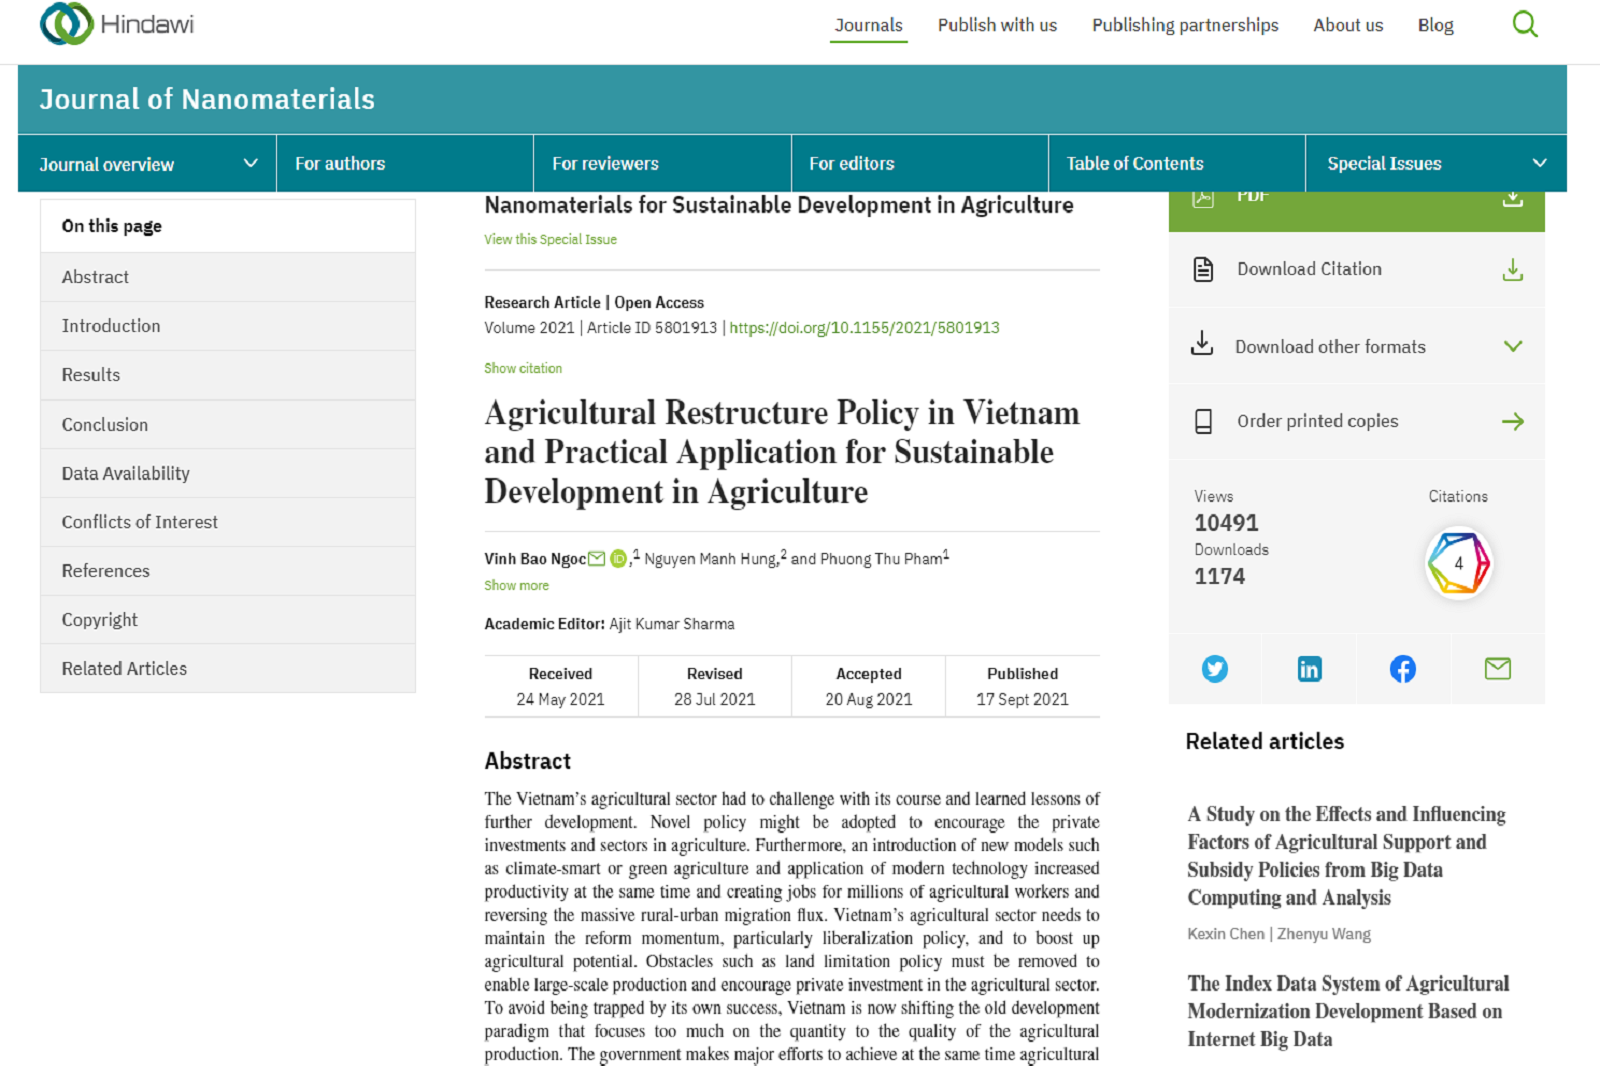 Chính sách tái cơ cấu nông nghiệp ở Việt Nam và ứng dụng thực tiễn để phát triển bền vững trong nông nghiệp